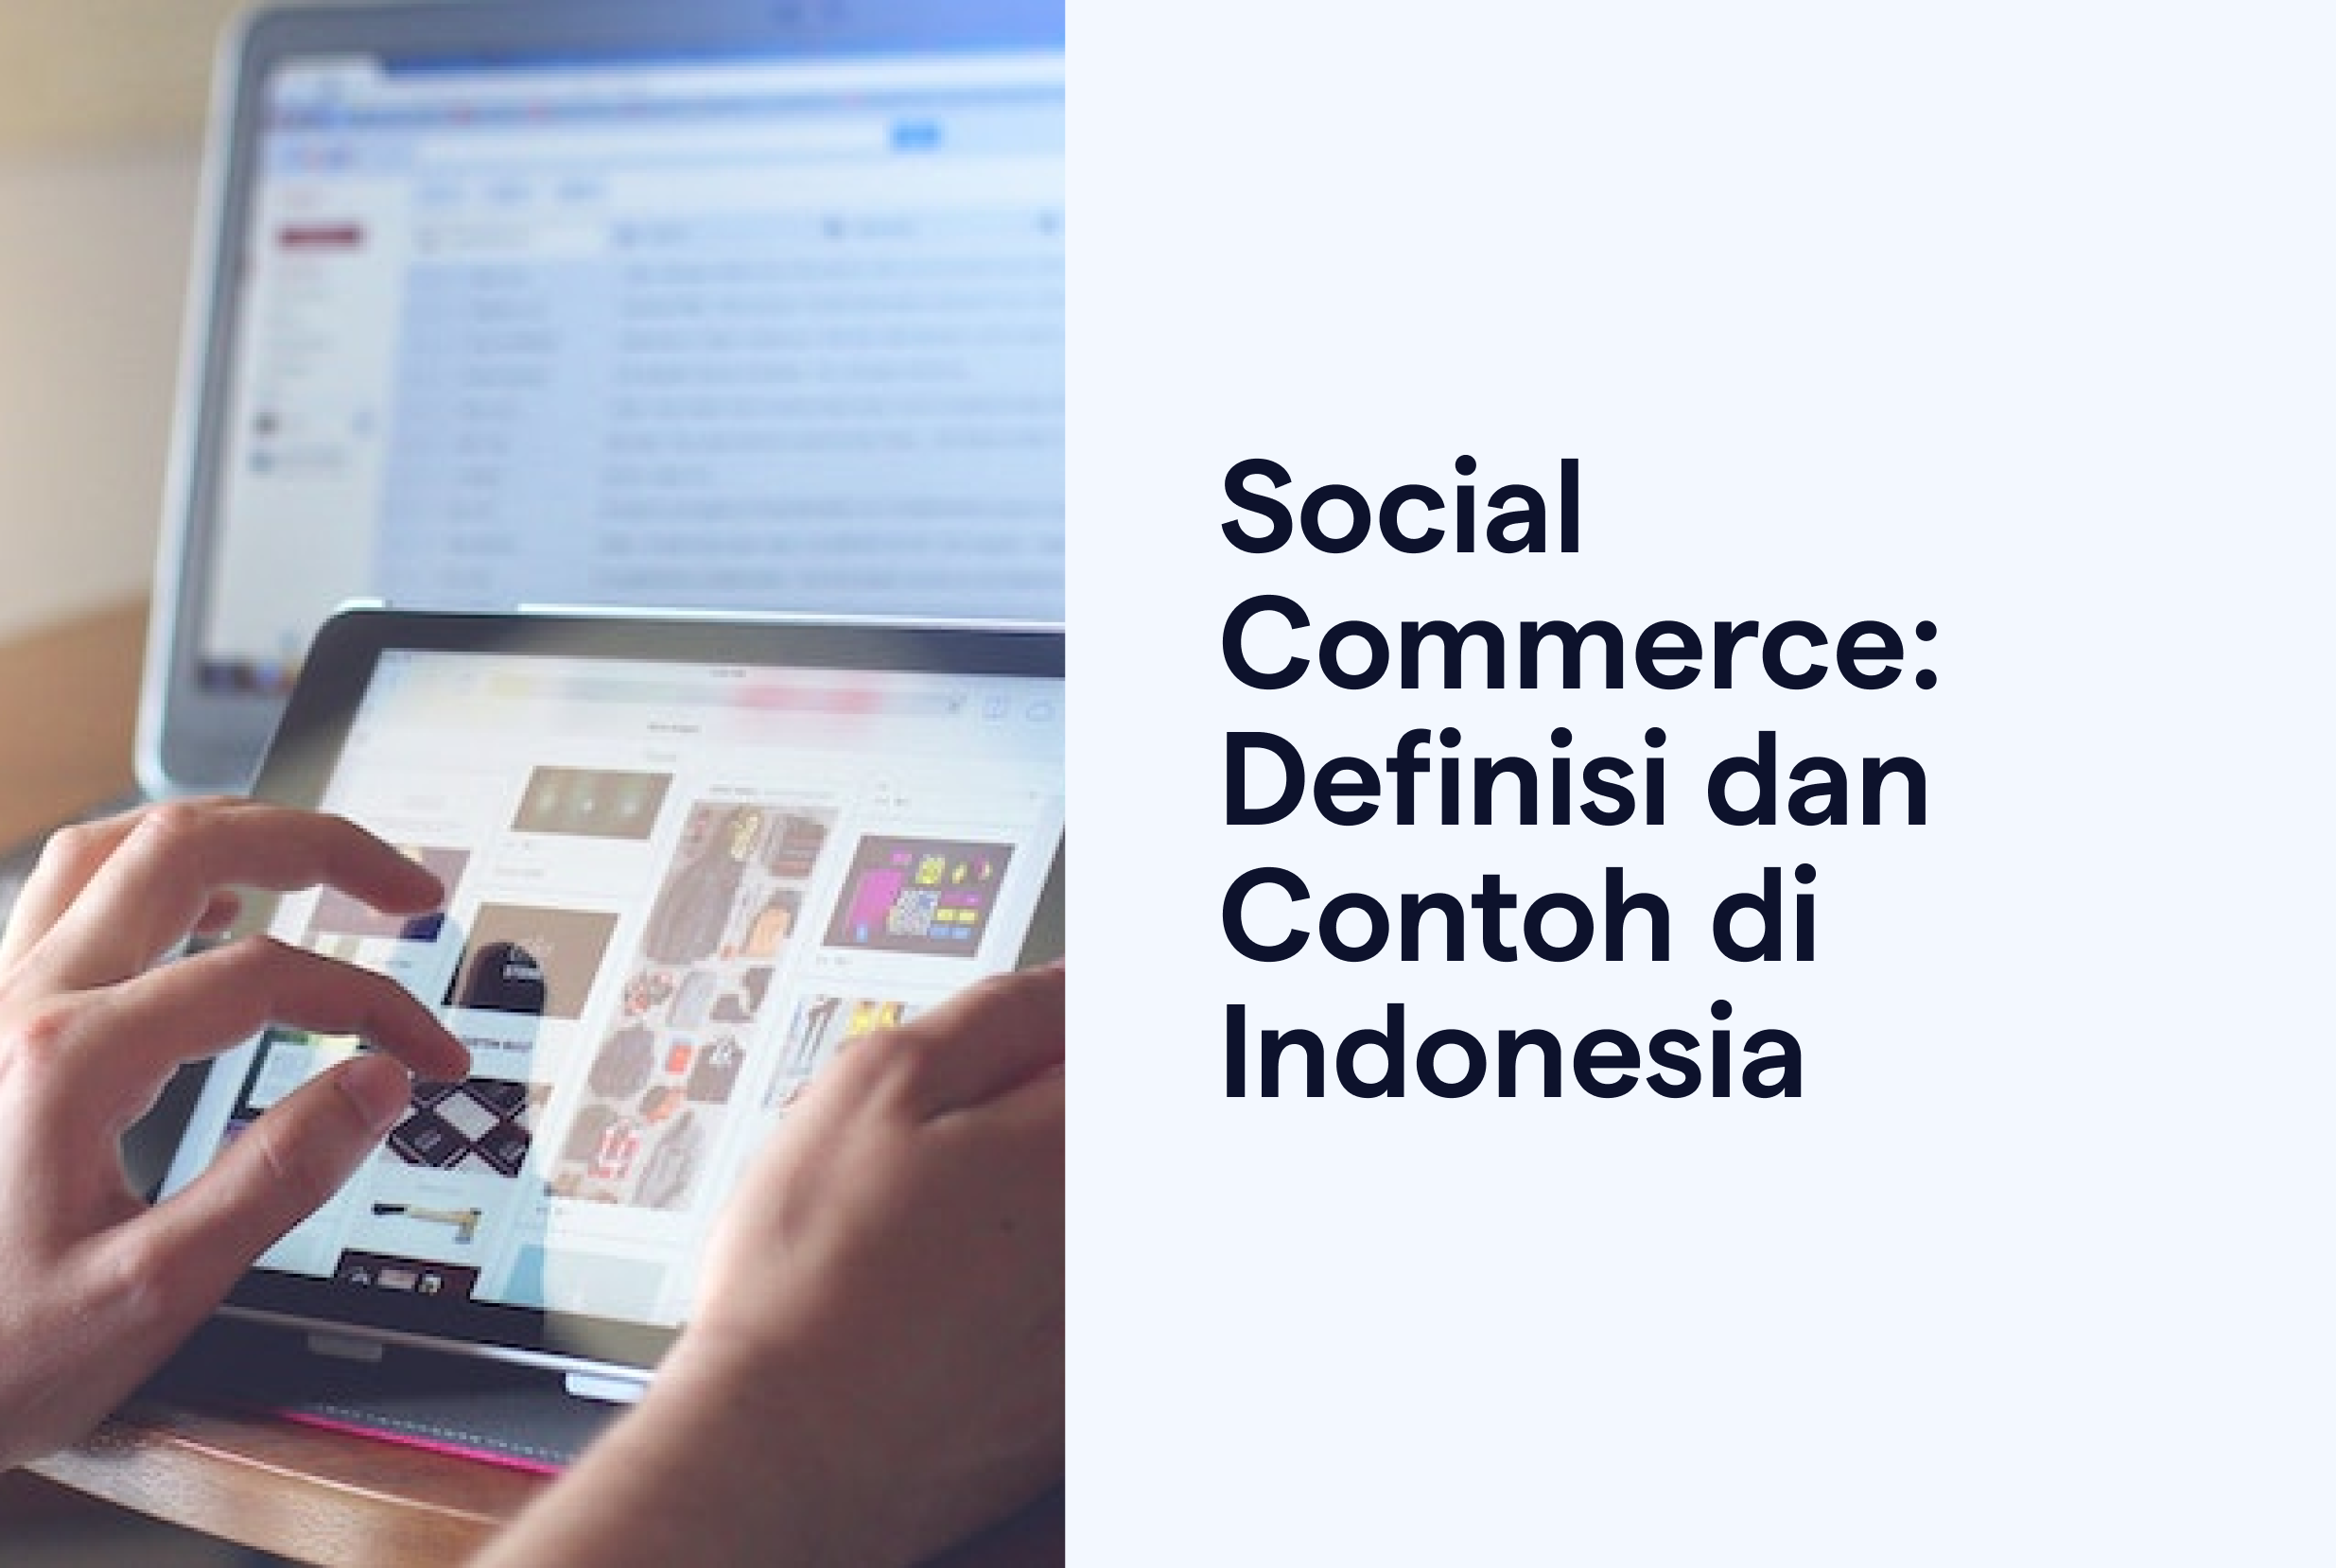 Social Commerce: Definisi dan Contoh di Indonesia